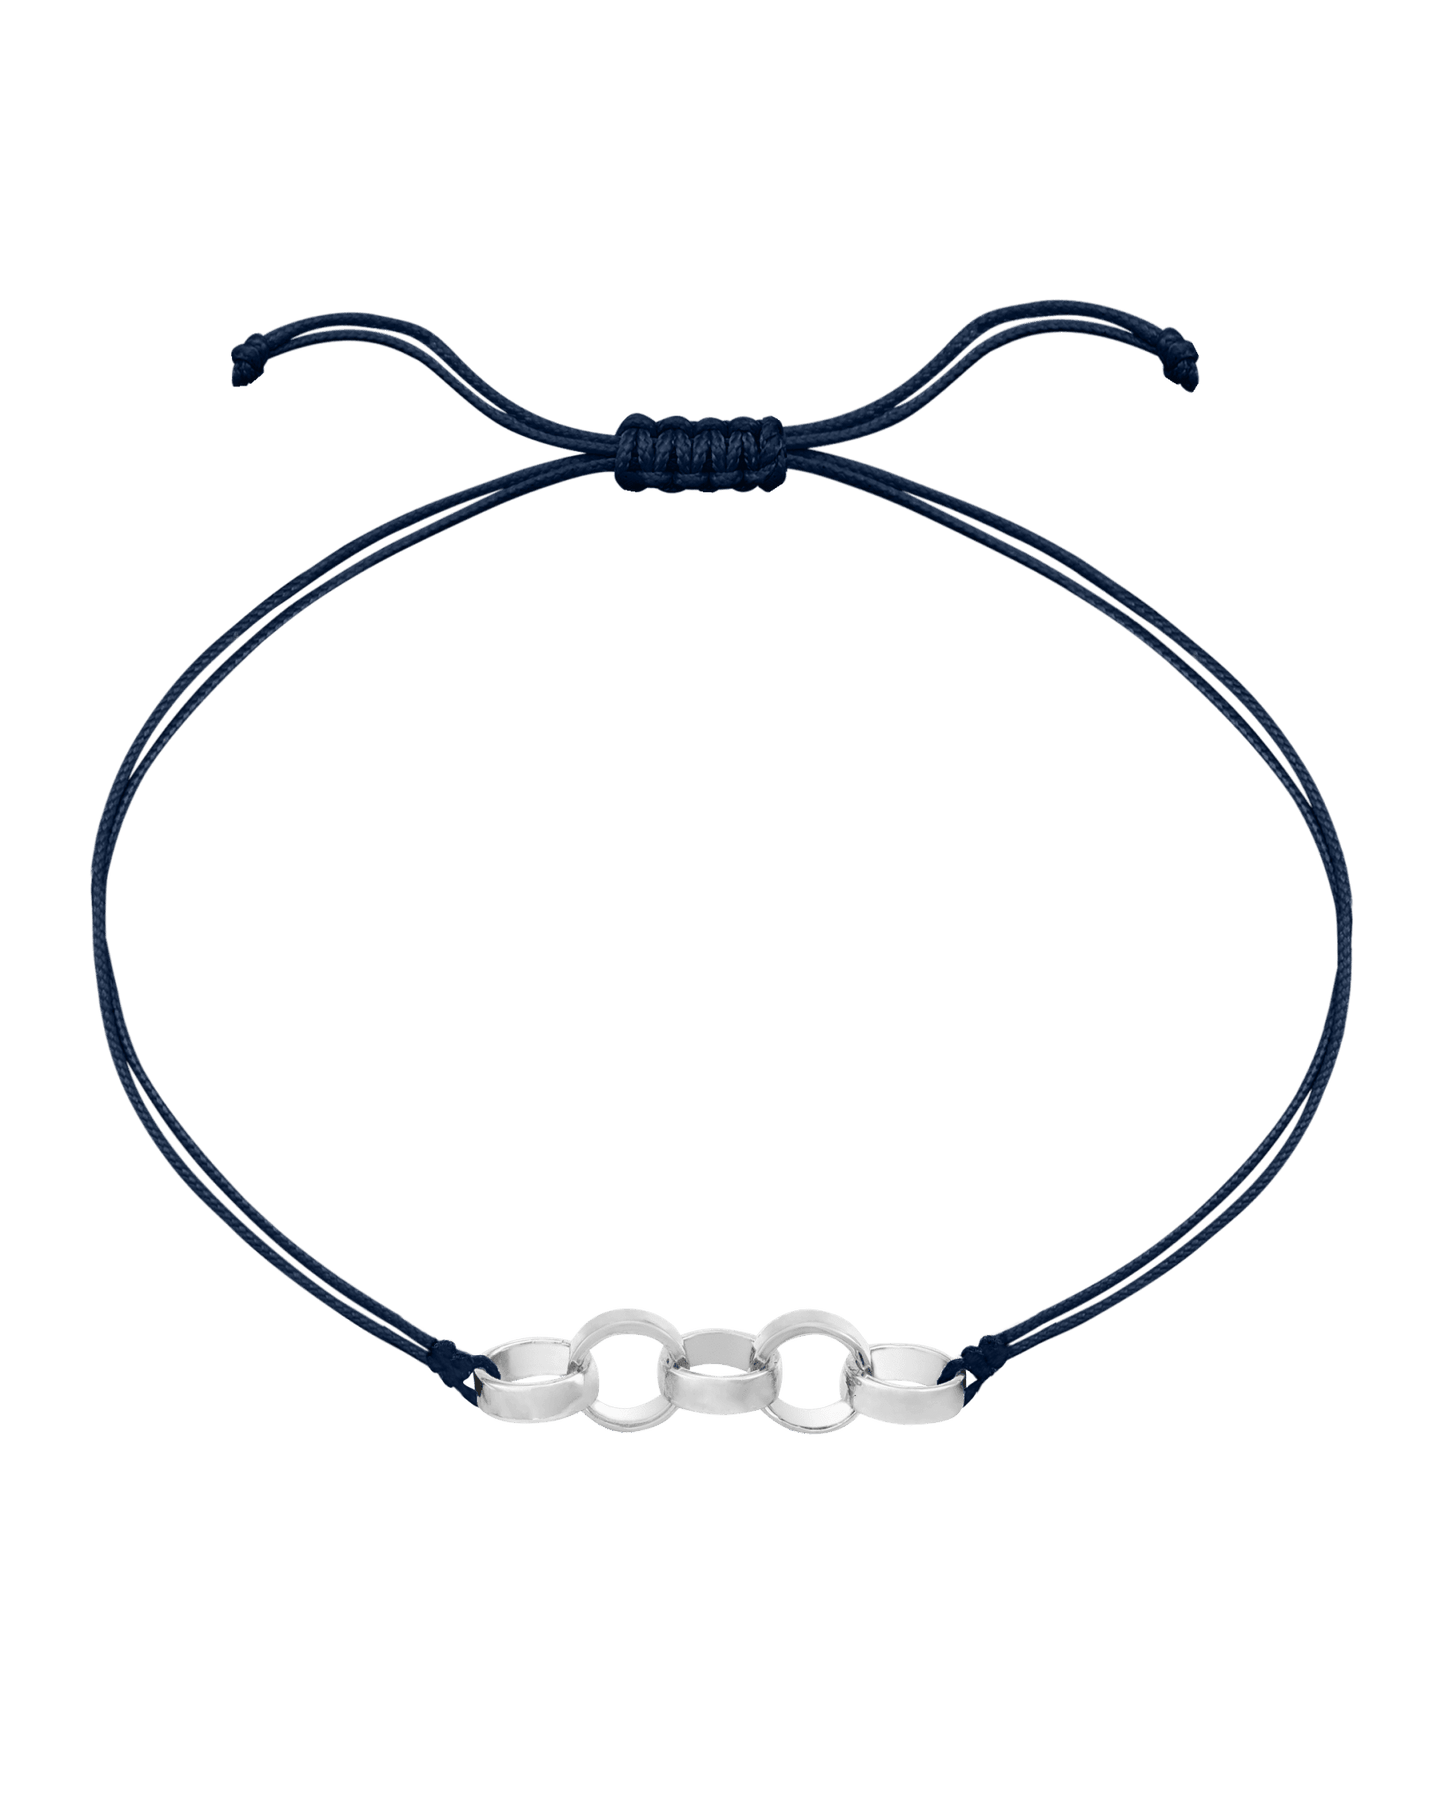 Engravable Links of Love - 925 Sterling Silver Bracelets magal-dev 5 Navy Blue 